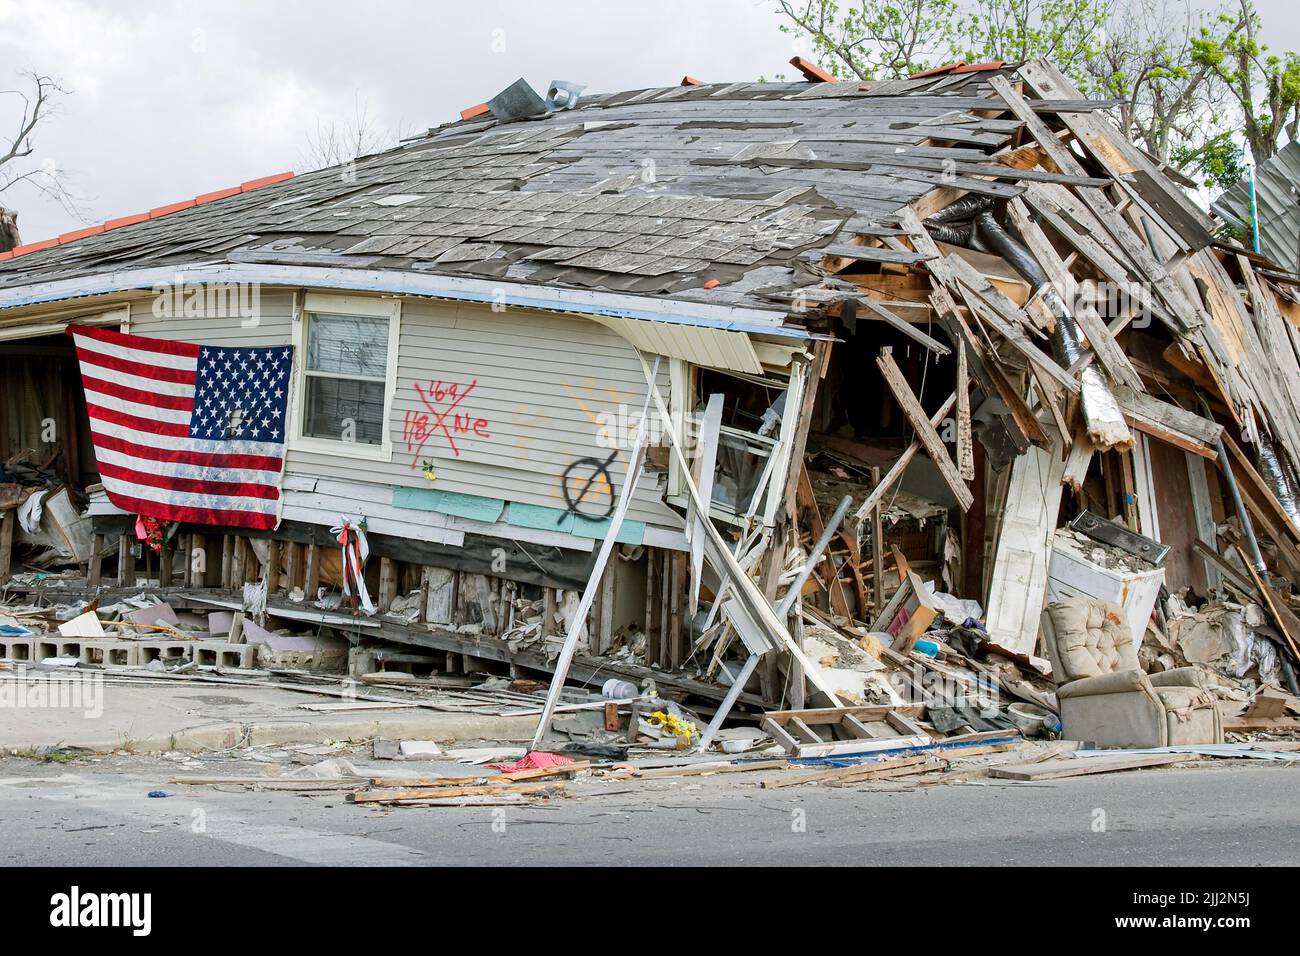 Les dommages causés par l'ouragan Katrina, une tempête de catégorie 5 dans le neuvième quartier de la Nouvelle-Orléans, en Louisiane, ont fait des ravages sur la côte américaine du golfe en août 2005. (ÉTATS-UNIS) Banque D'Images